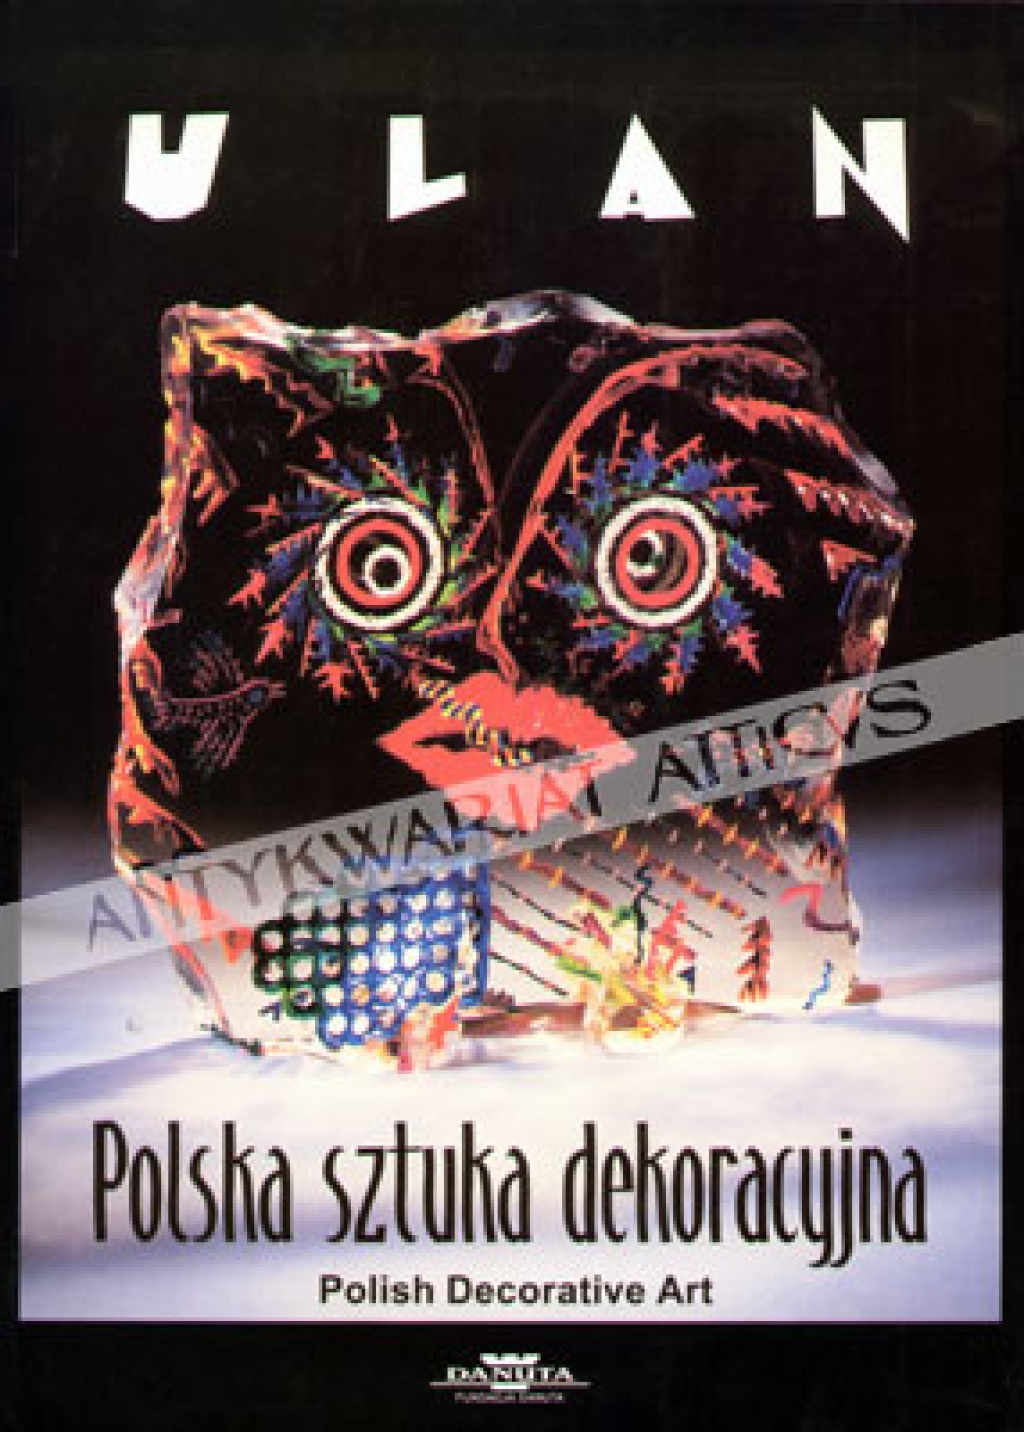 ULAN - Polska sztuka dekoracyjna. Polish Decorative Art.